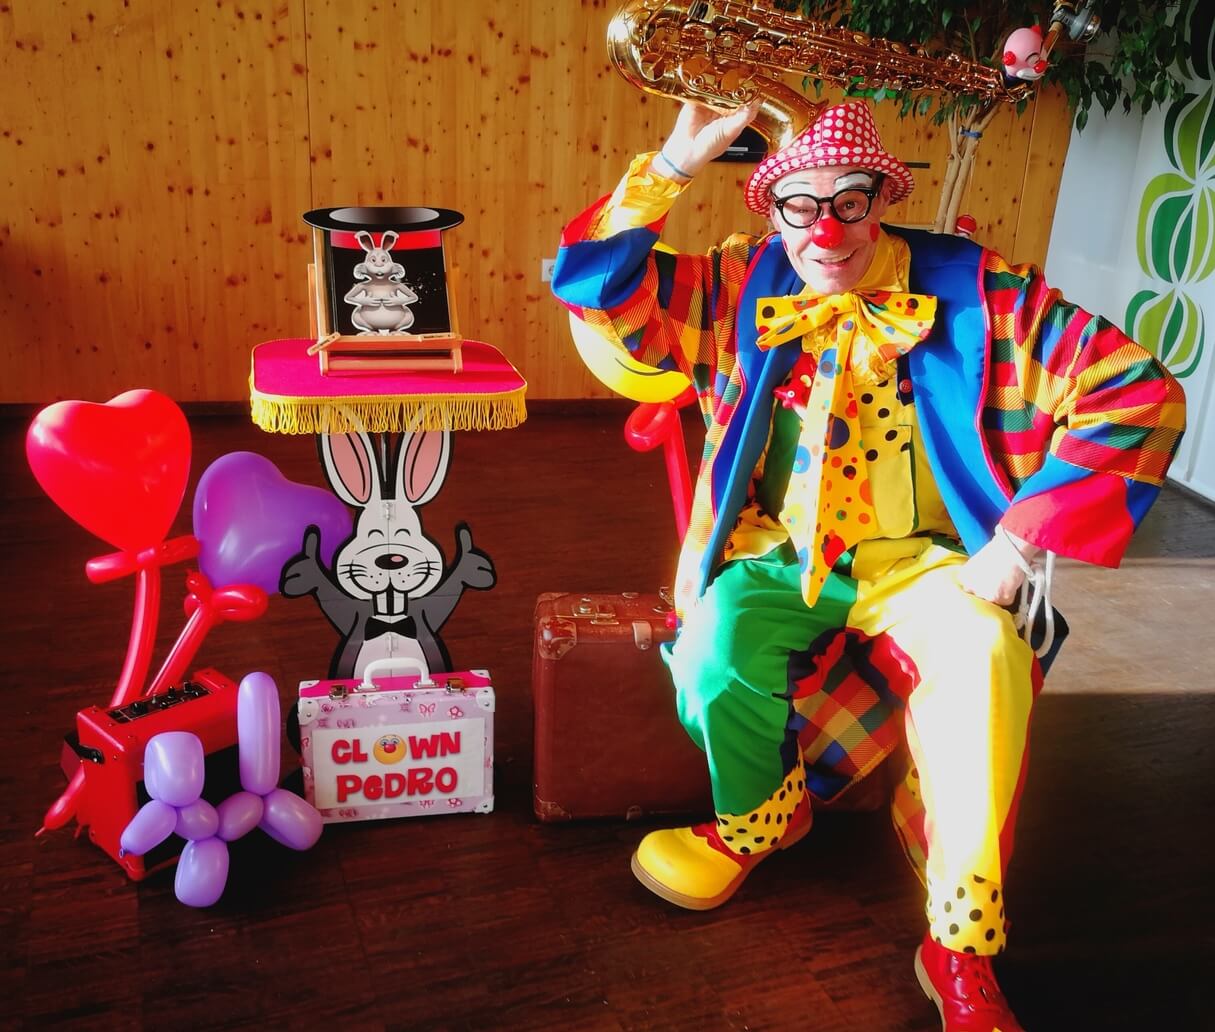 Clown Pedro bei Kindergeburtstagsfeier mit Hase und Luftballons.